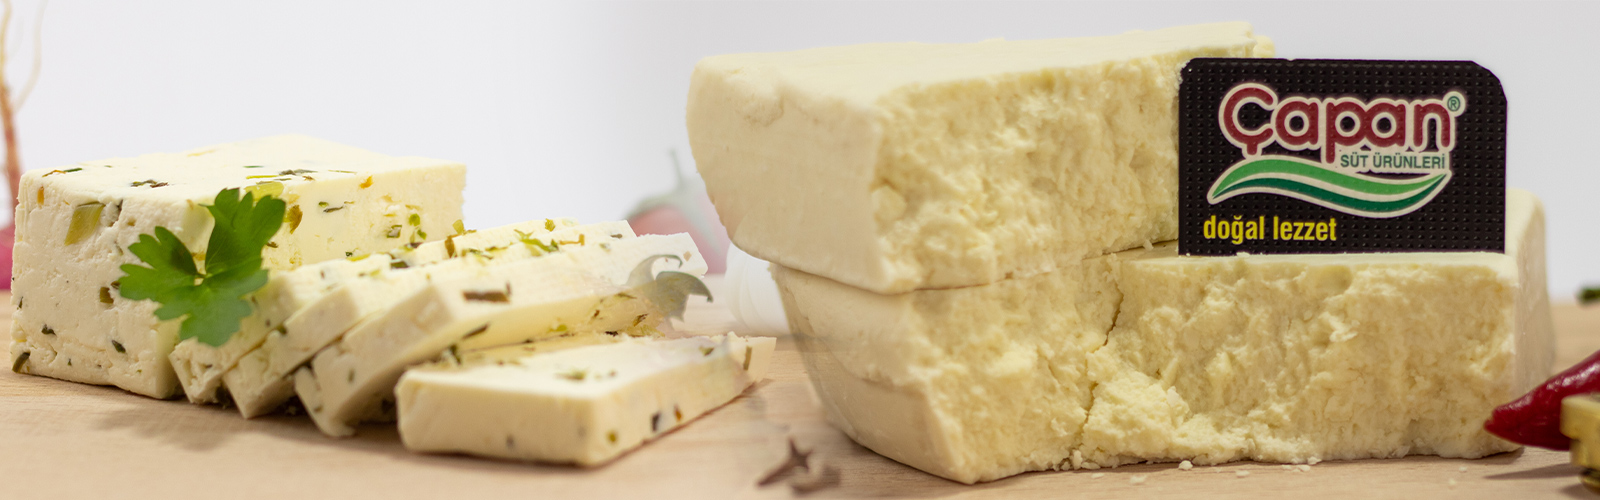 yoresel-peynir